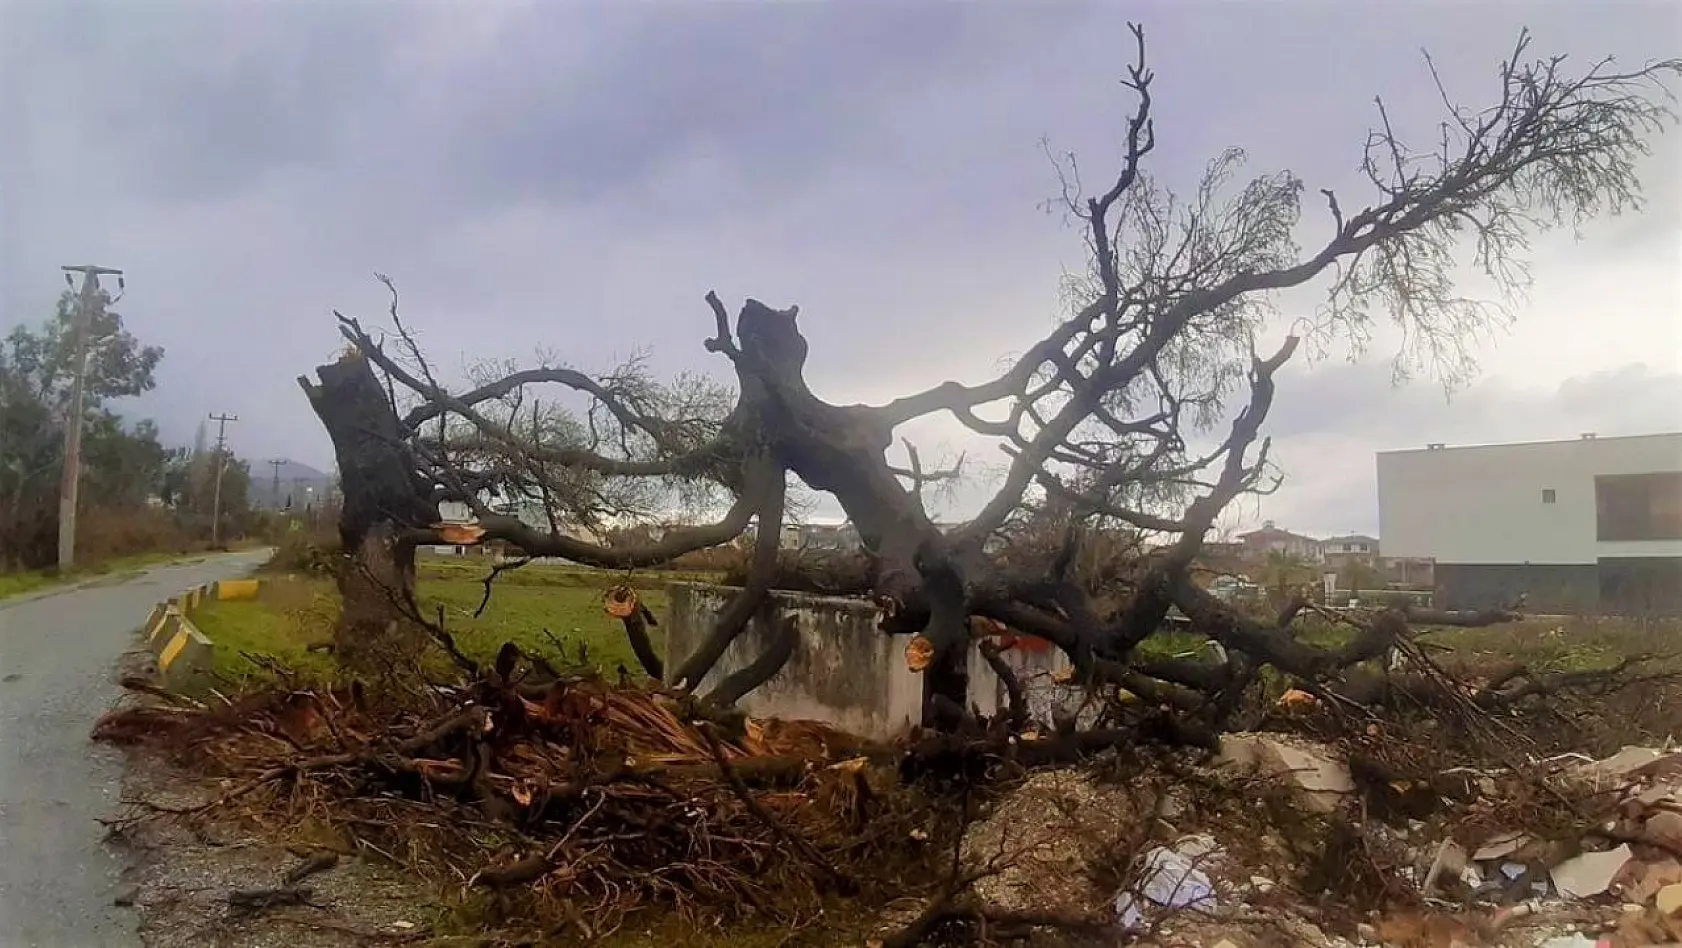 Fırtına, 2 asırlık ağacı devirdi